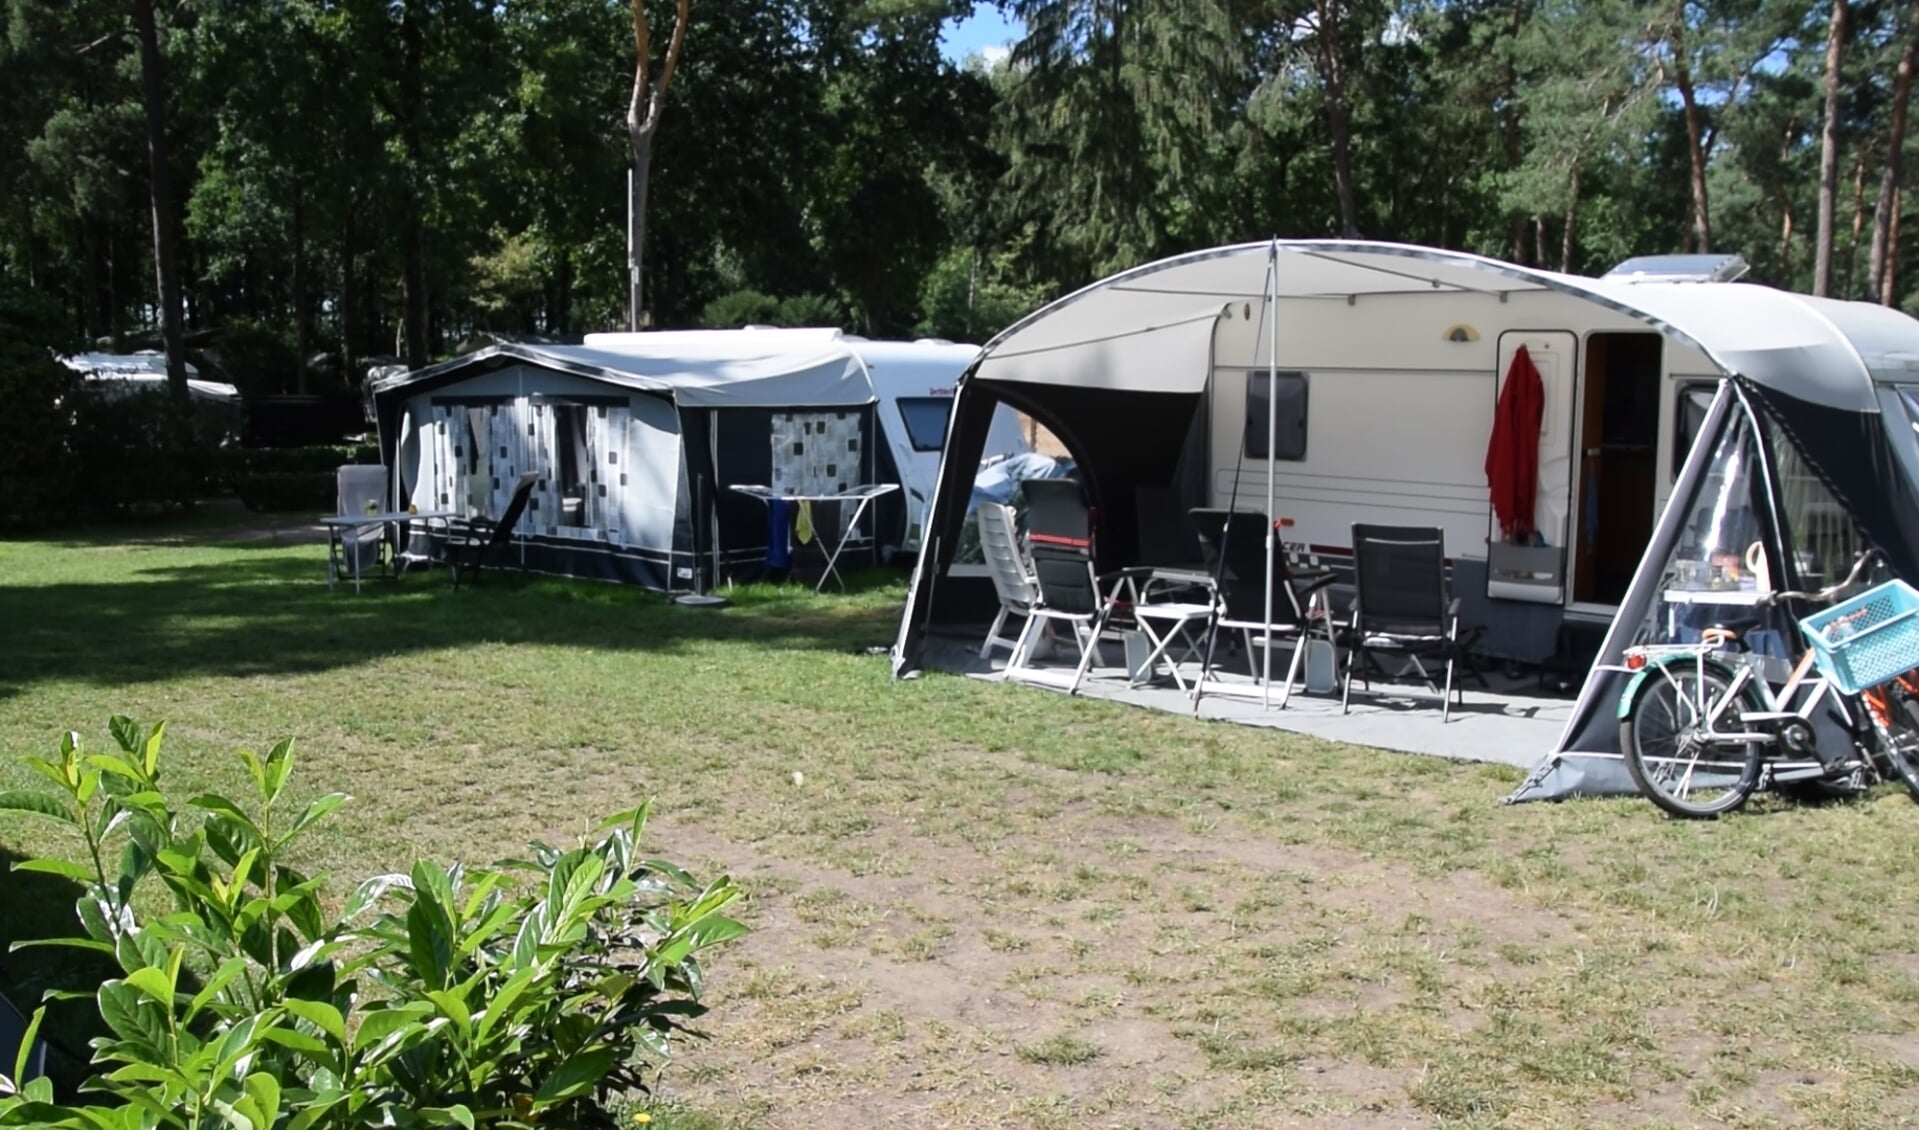 Voor camping Zuid Ginkel in Ede is het seizoen inmiddels voorbij, maar de afgelopen maanden verliepen prima.